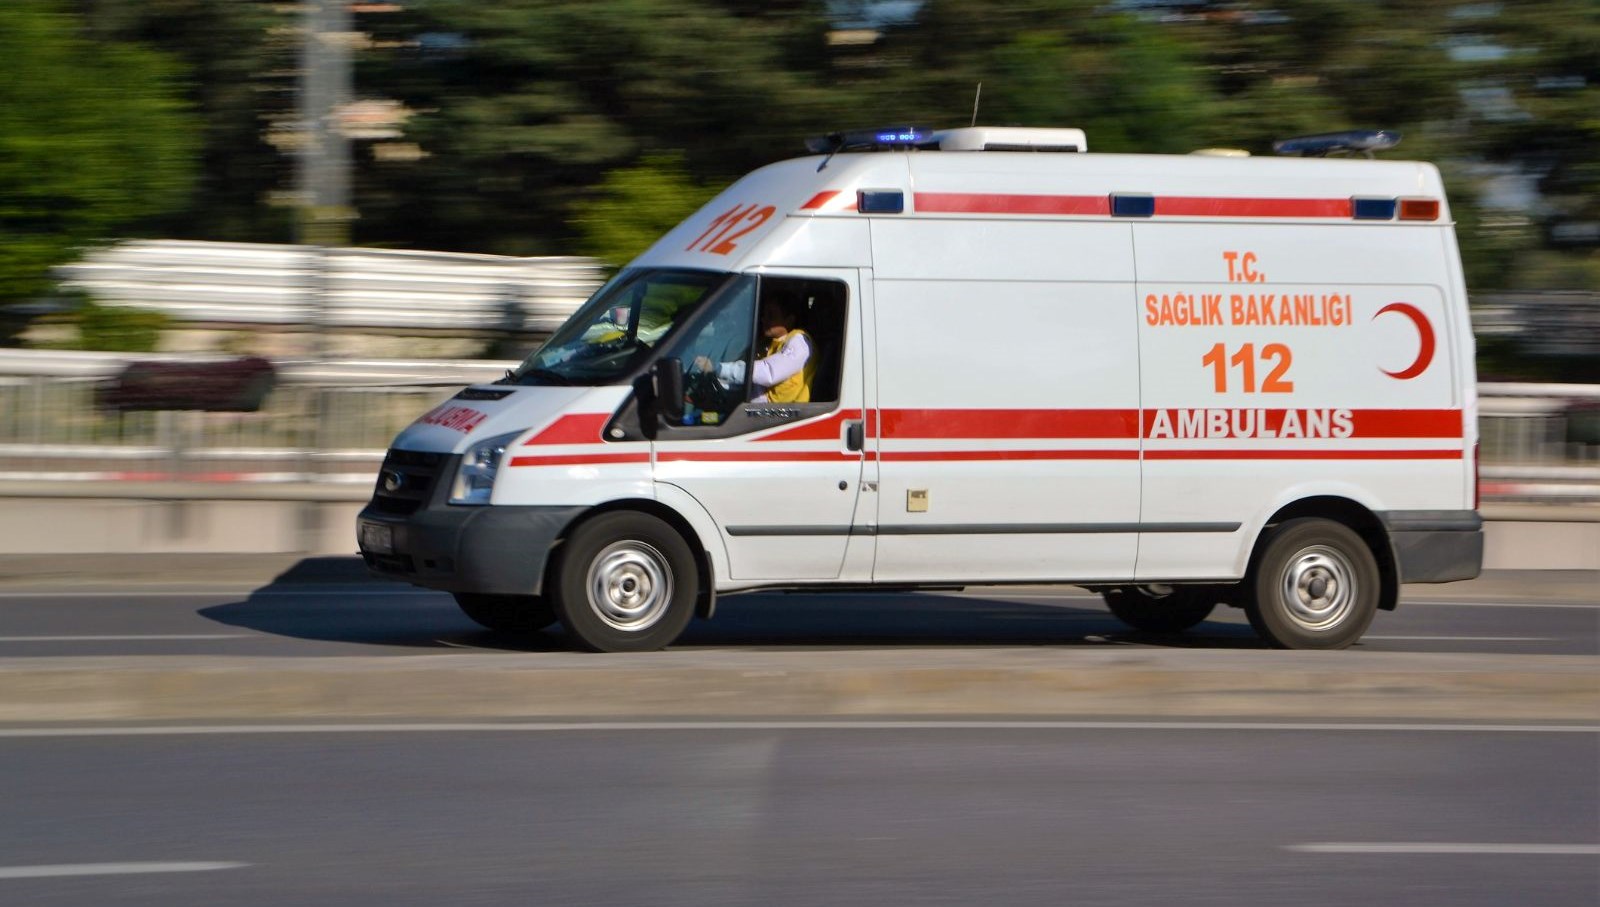 Rize’de park halindeki ambulansı kaçıran kişi Trabzon’da yakalandı